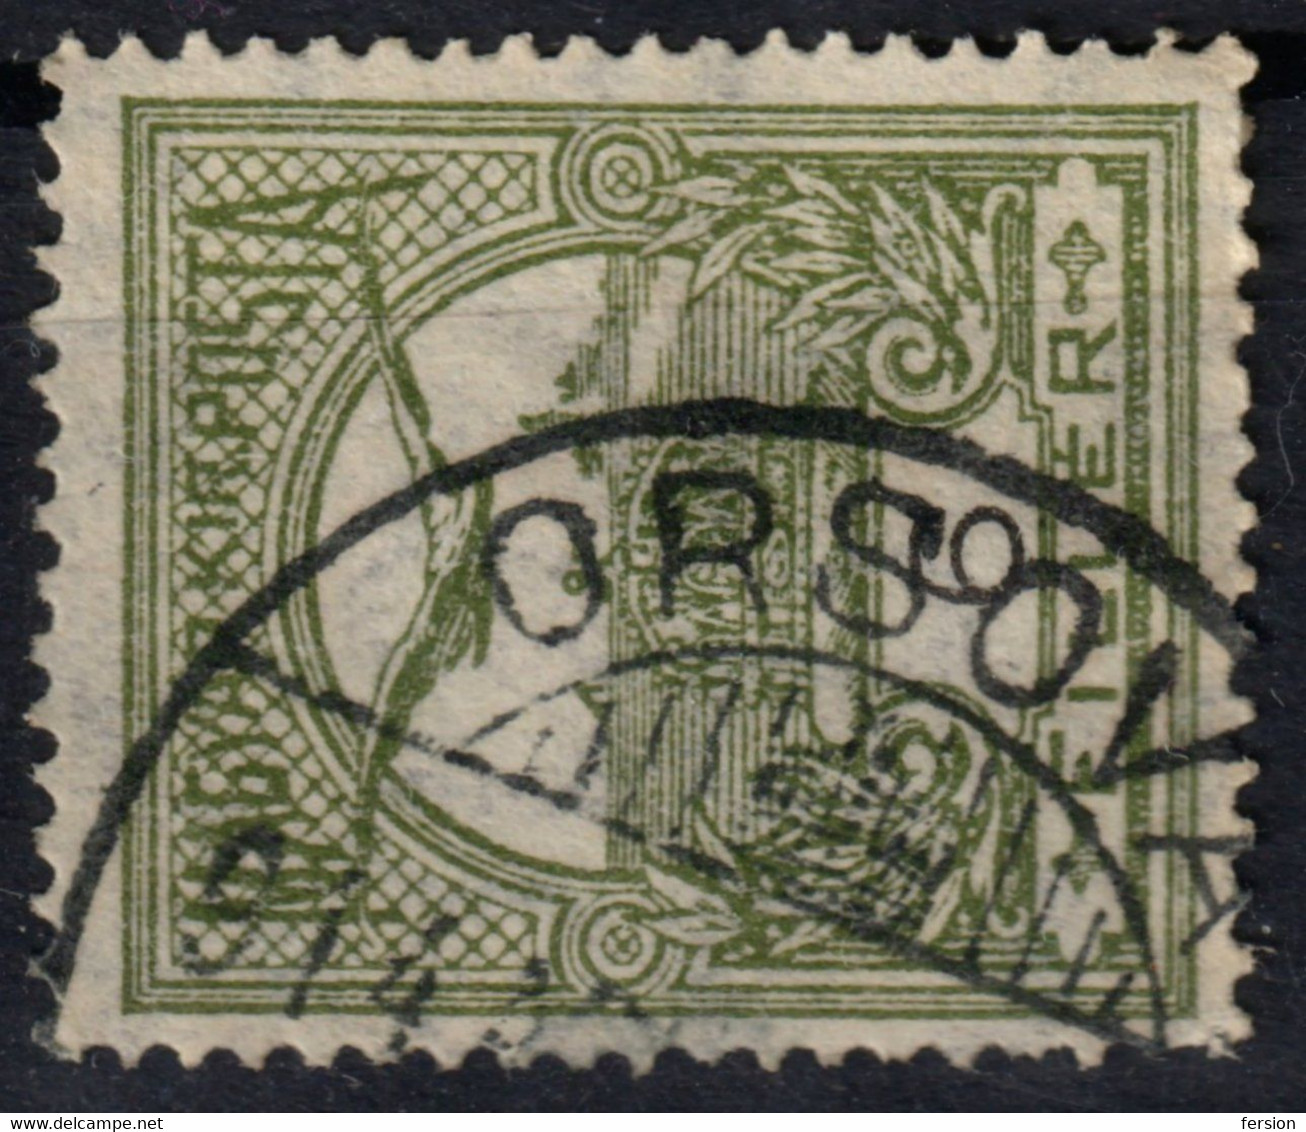 ORSOVA Orșova Postmark / TURUL Crown 1914 Hungary Romania Transylvania  Krassó Szörény County KuK - 6 Fill - Siebenbürgen (Transsylvanien)